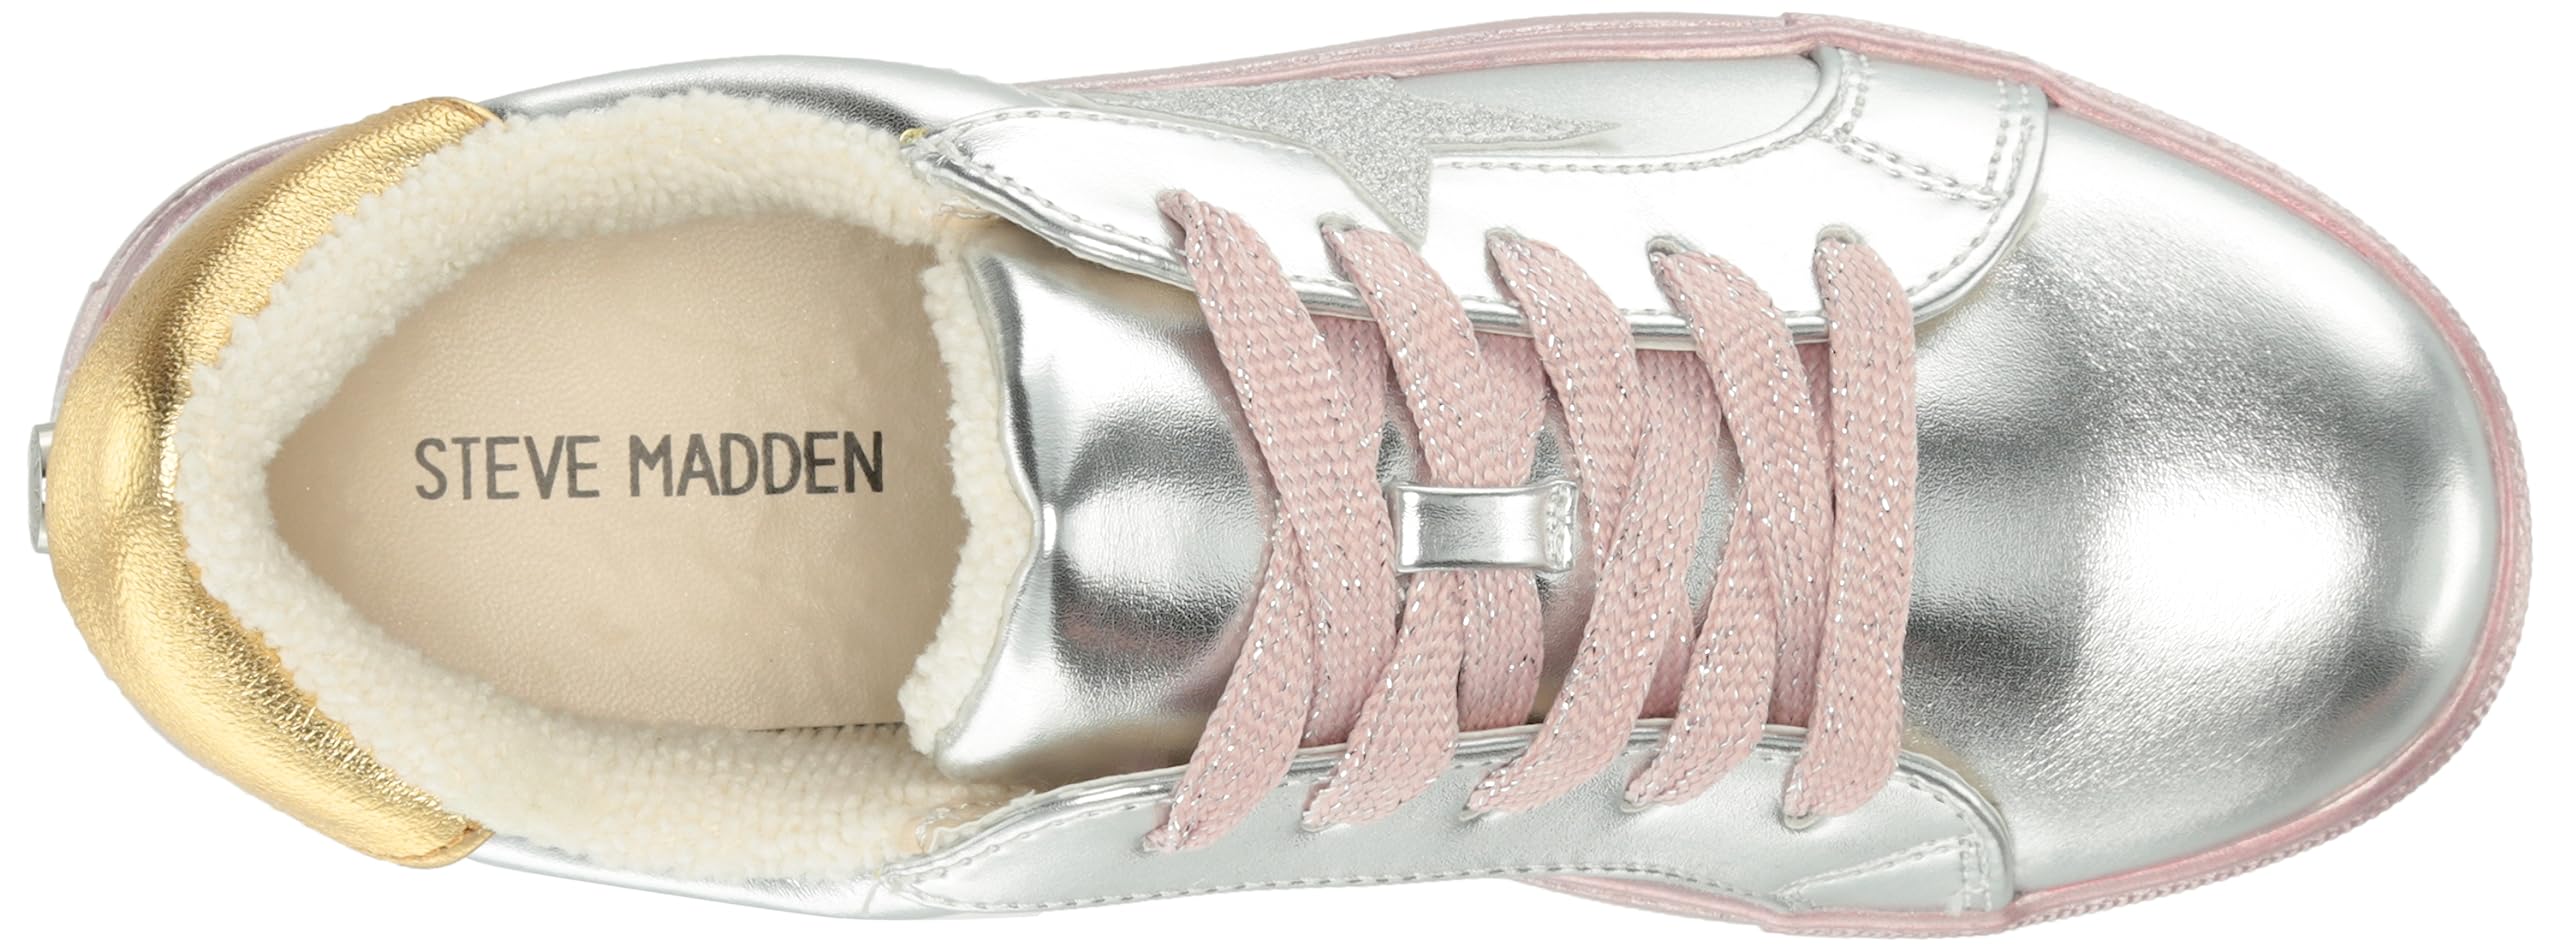 Steve Madden Girls Shoes Rezume Sneaker